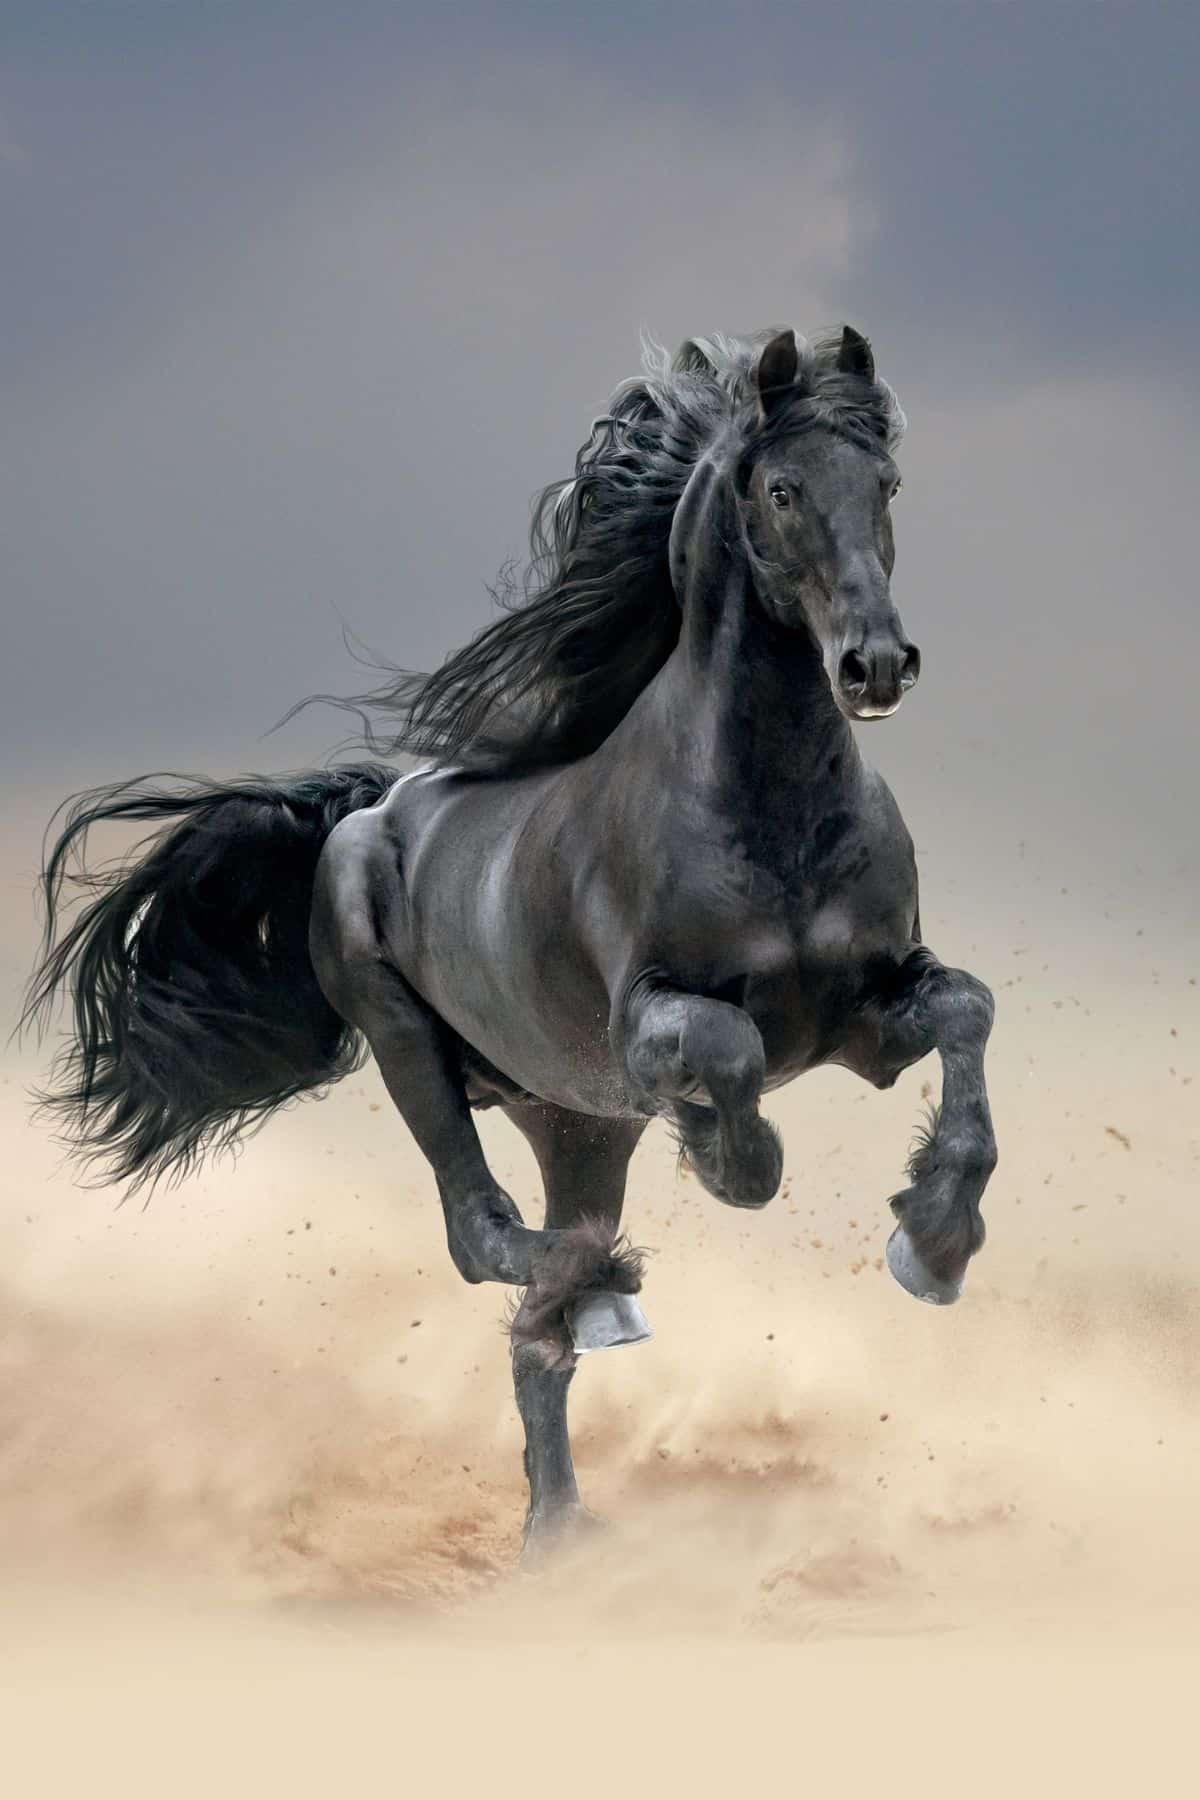 Black horse running in field